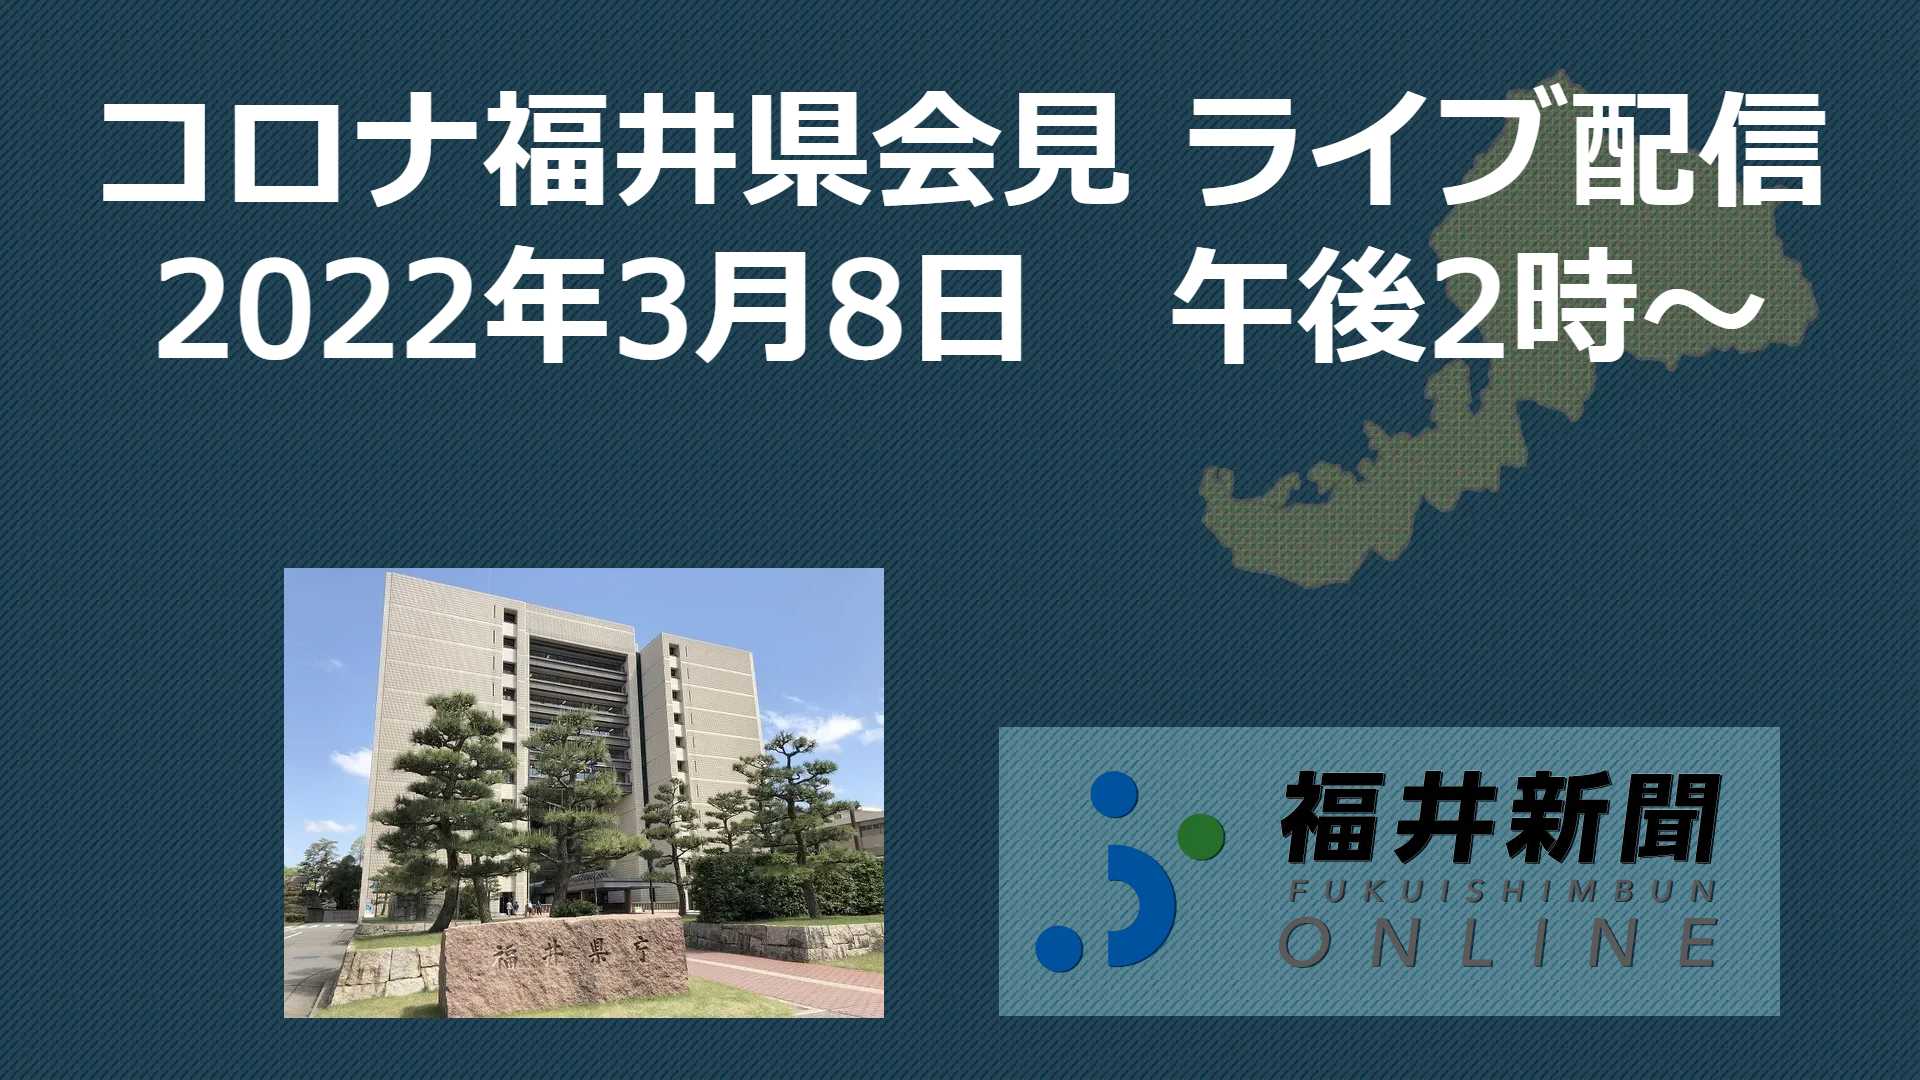 コロナ433人感染、福井県の会見を中継 3月8日14時からYouTube ...